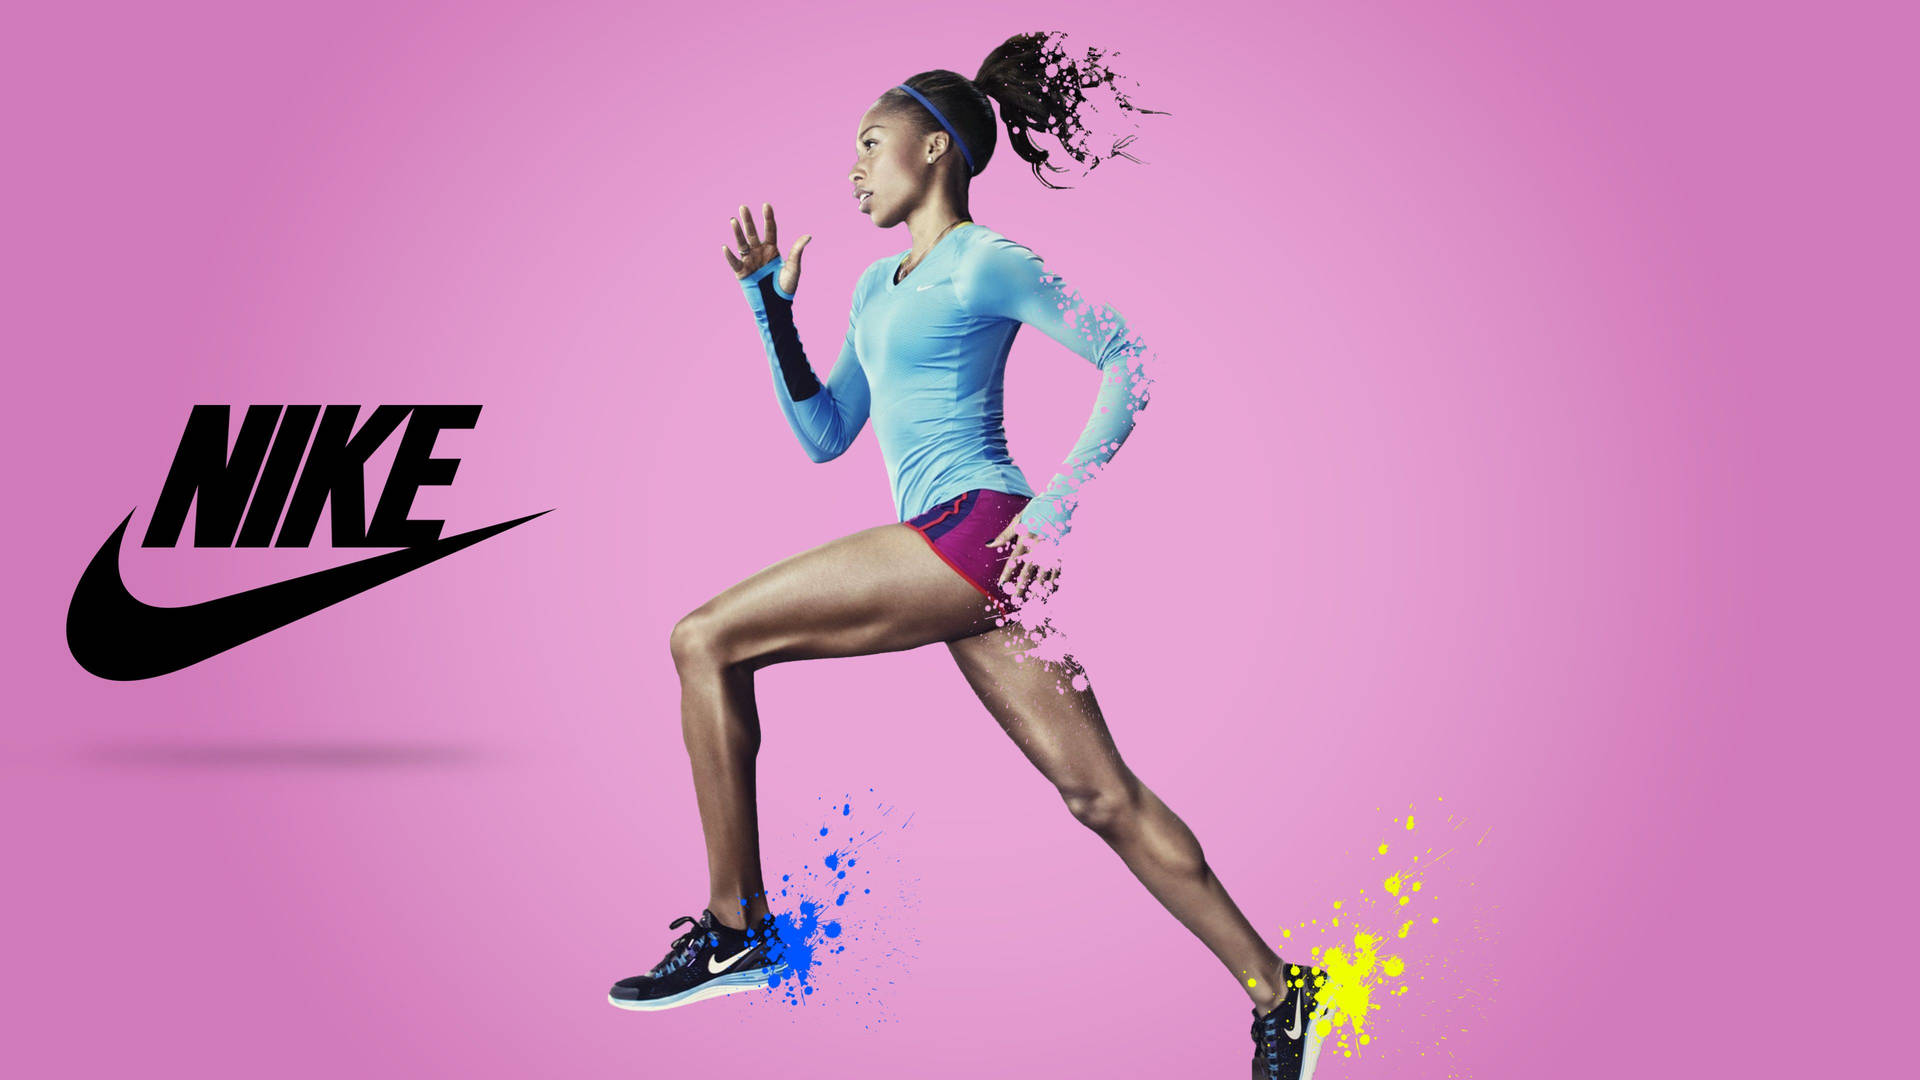 Nike Girl Model Athlete Photograph Background